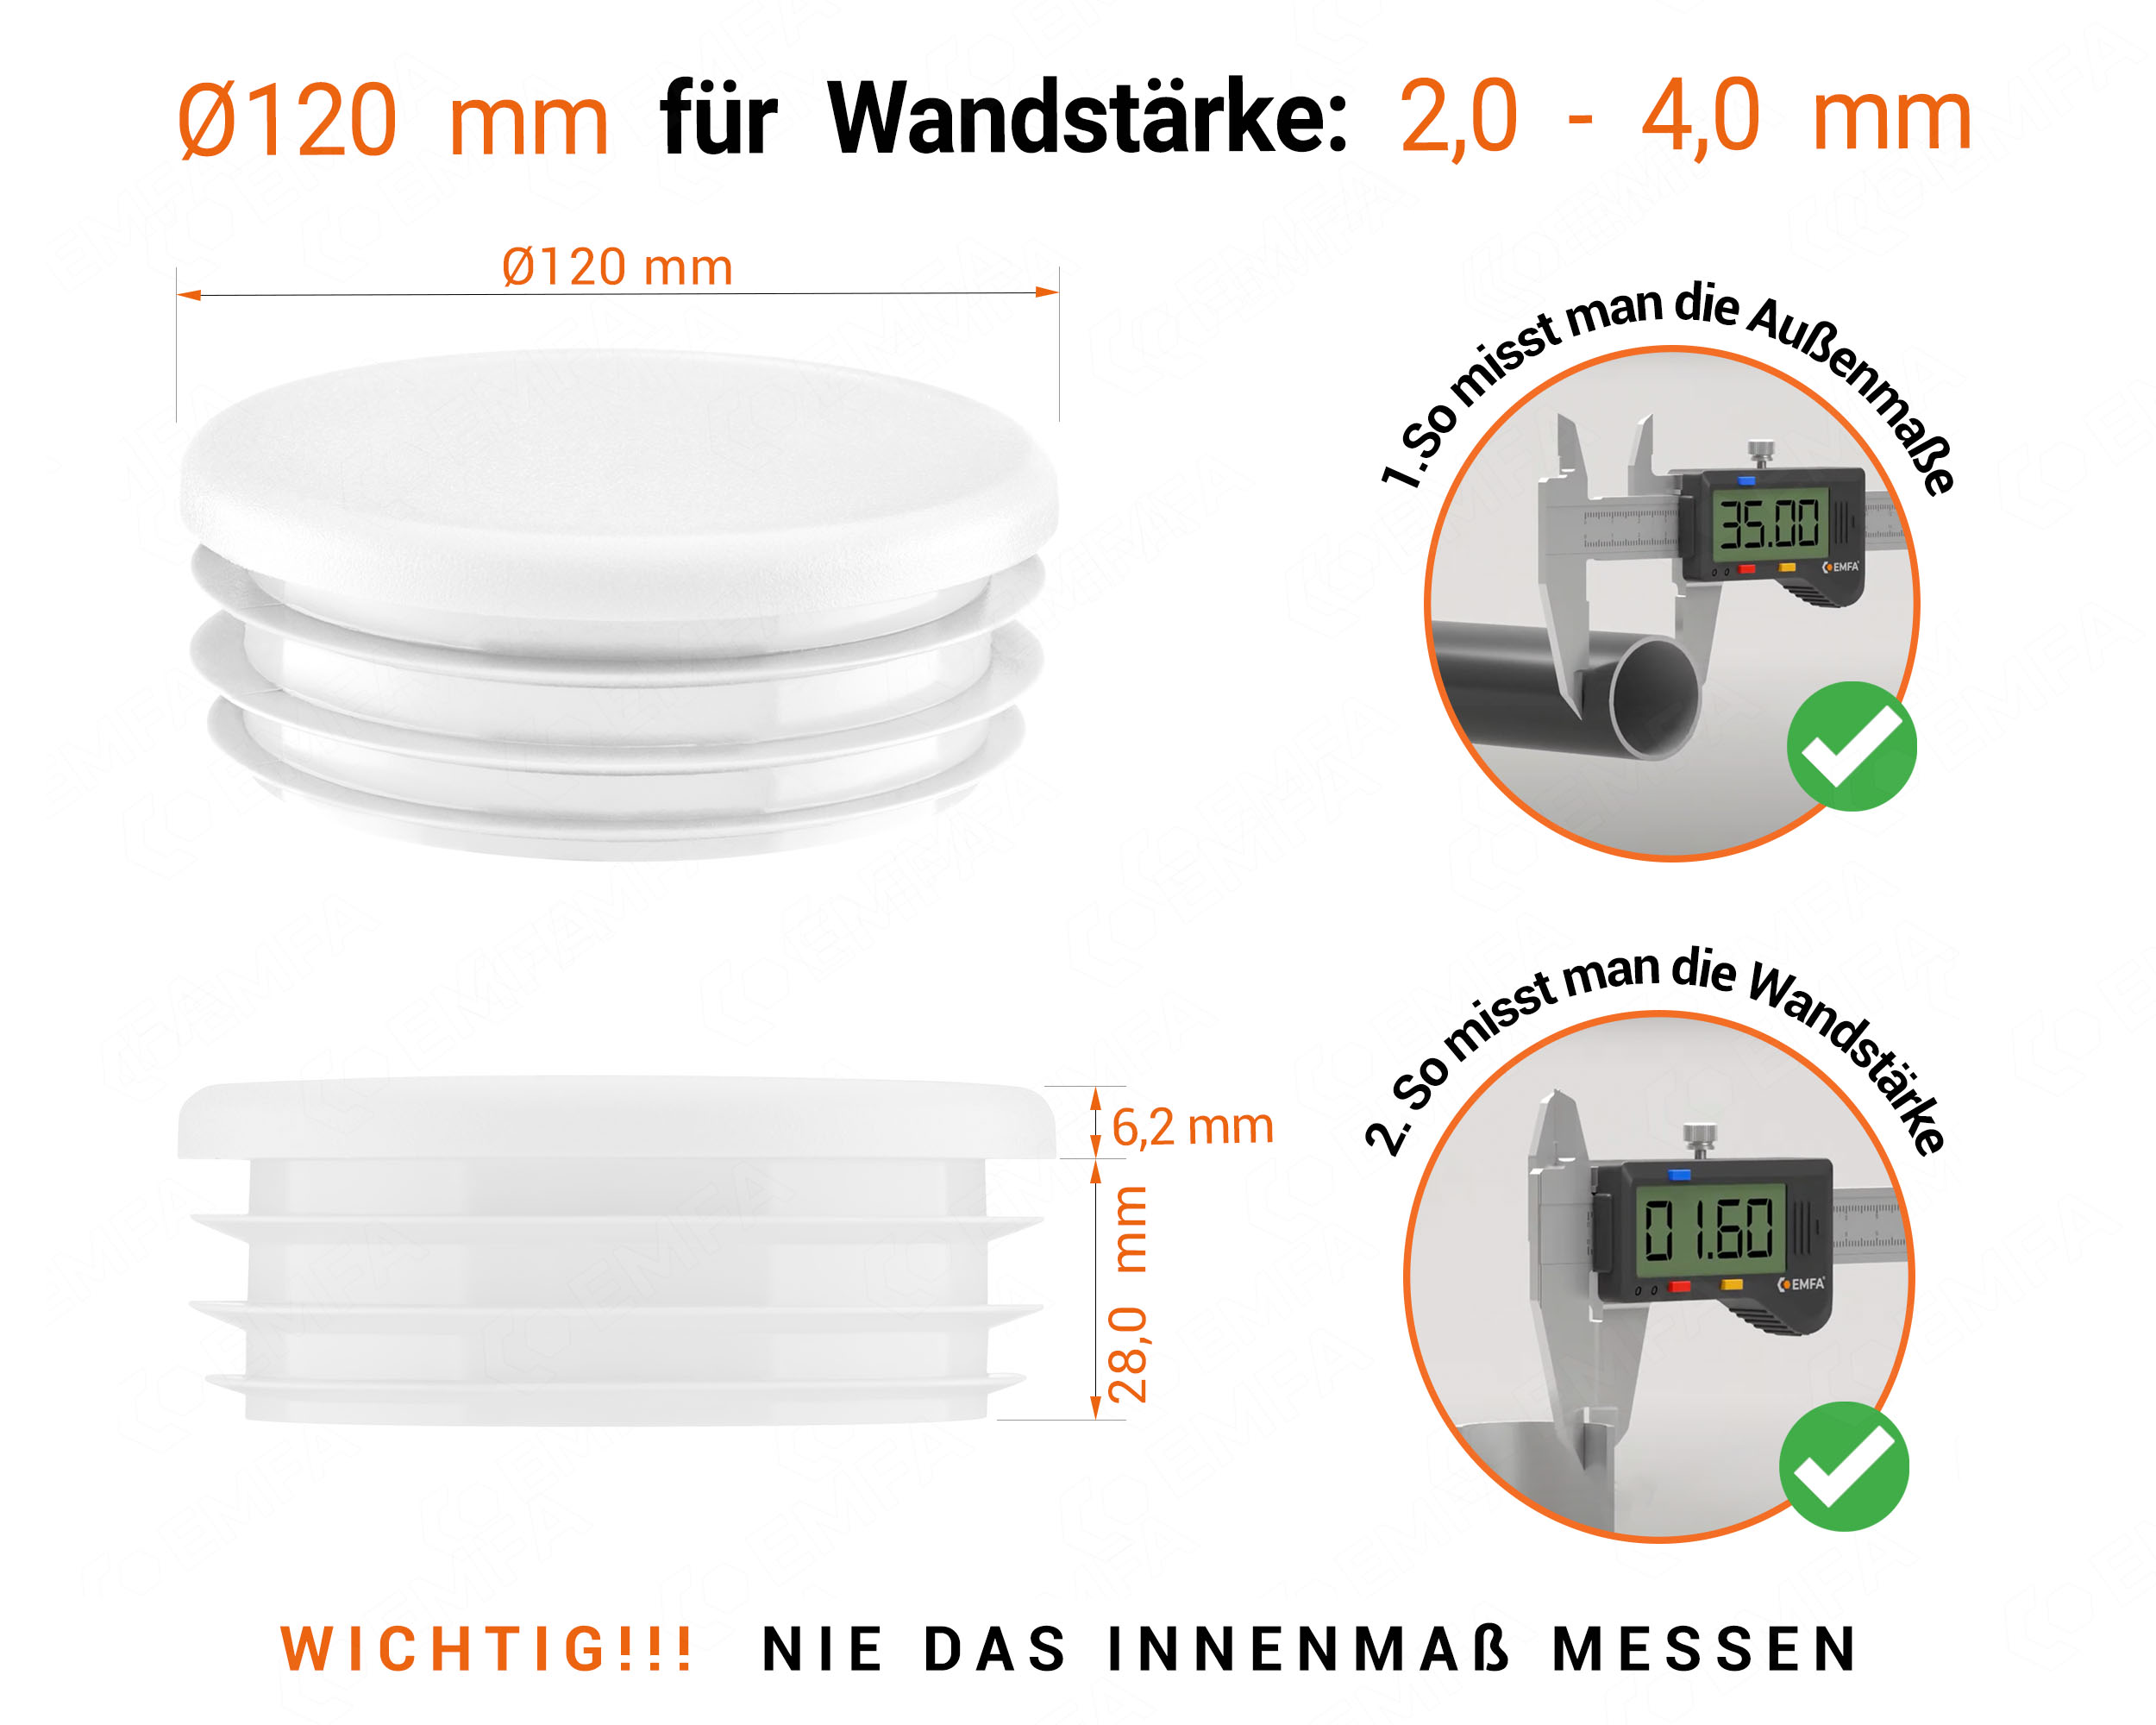 Weiße Endkappe für Rundrohre in der Größe 120 mm mit technischen Abmessungen und Anleitung für korrekte Messung